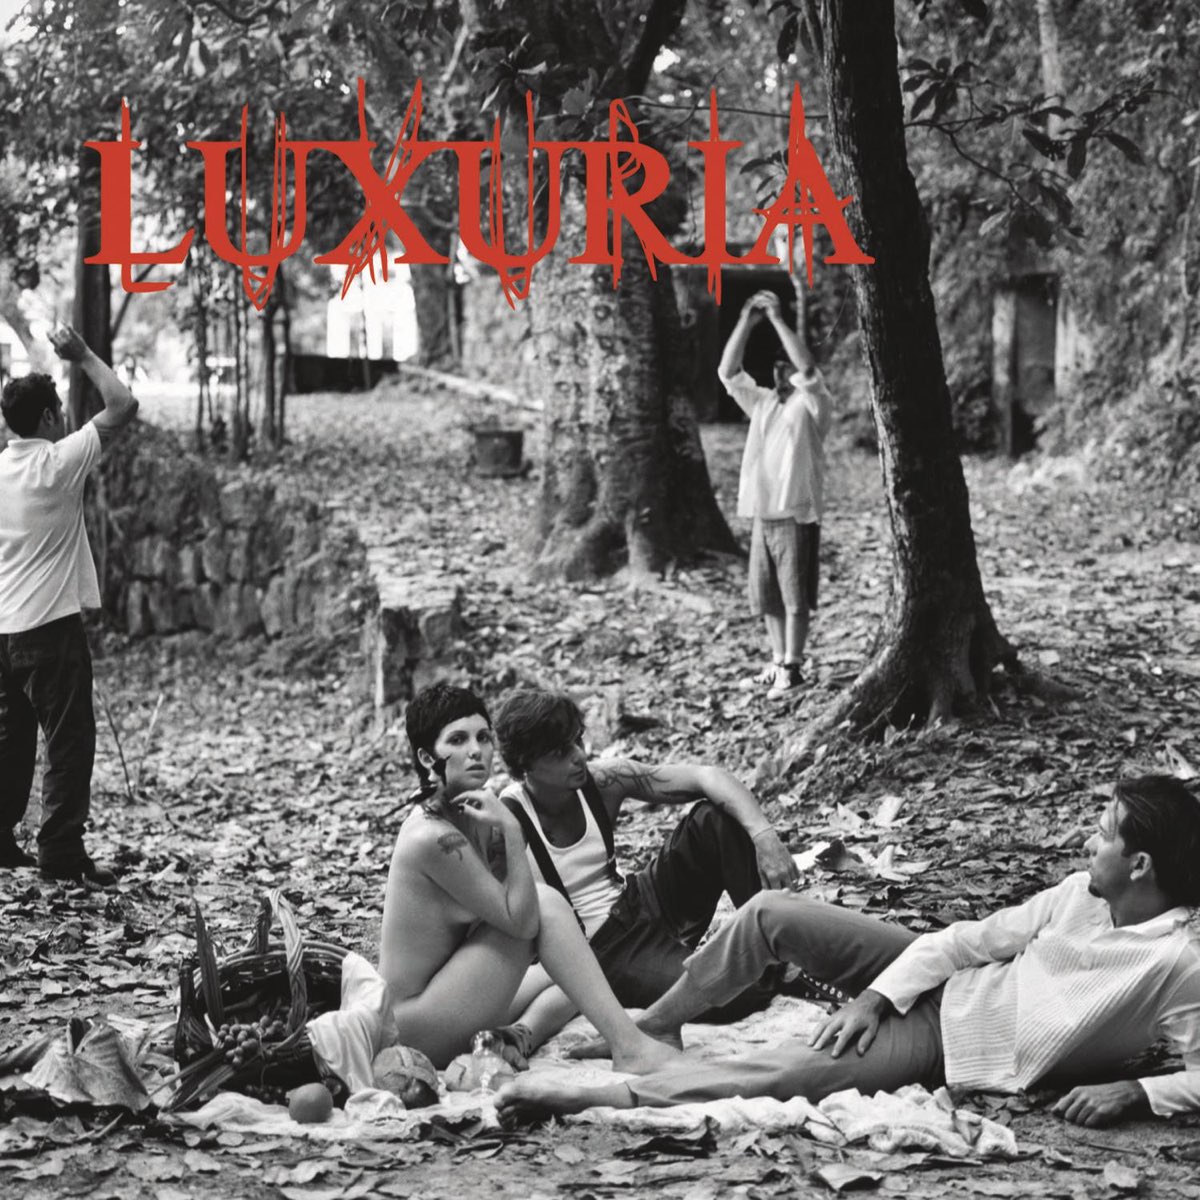 Luxúria — Ódio cover artwork